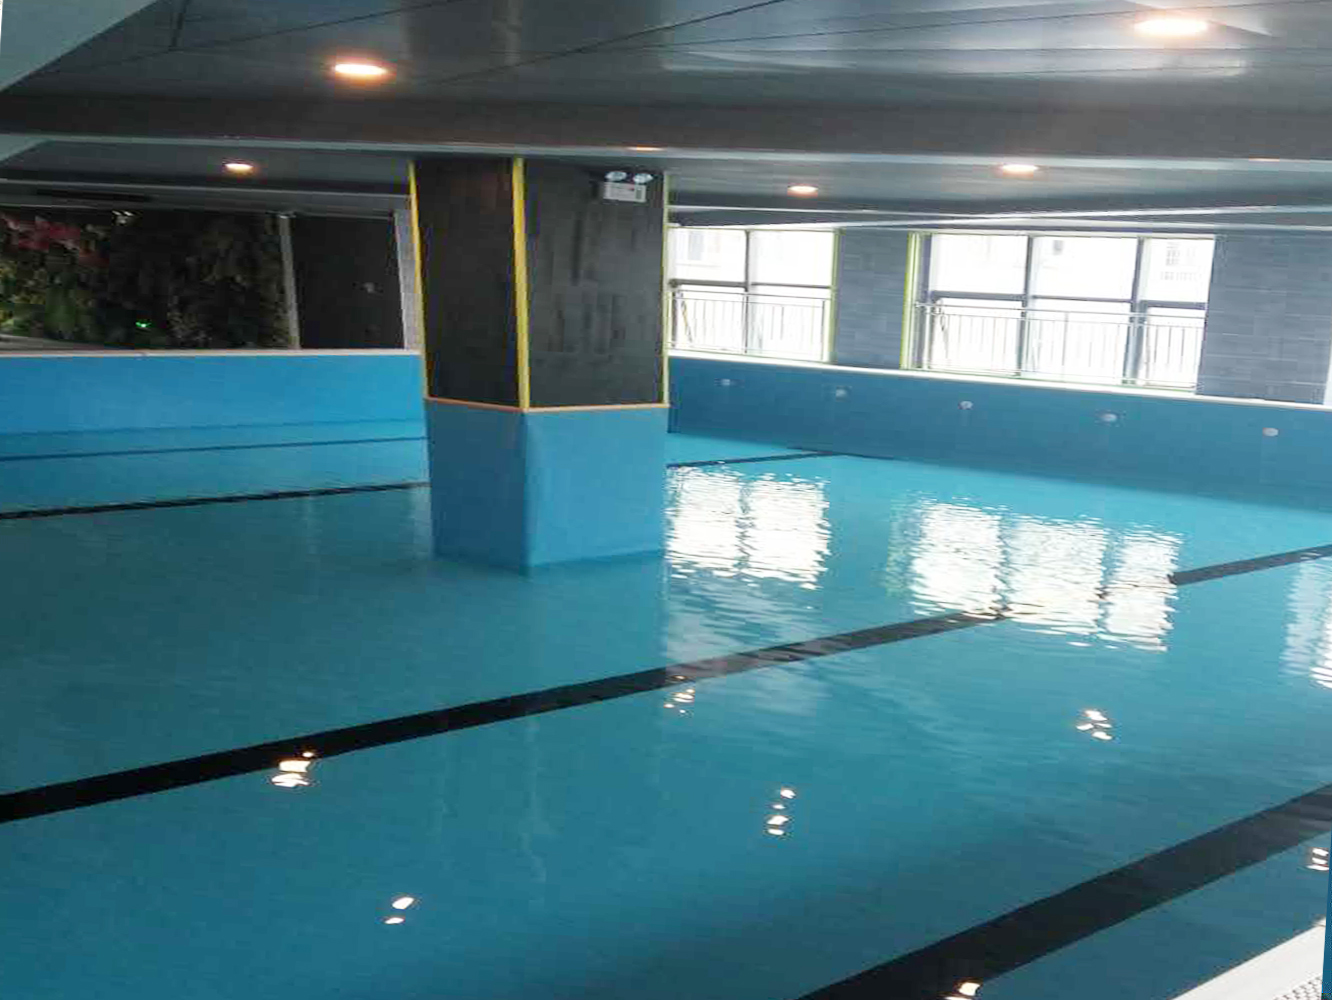 2017年7月众东国际室内游泳池工程竣工